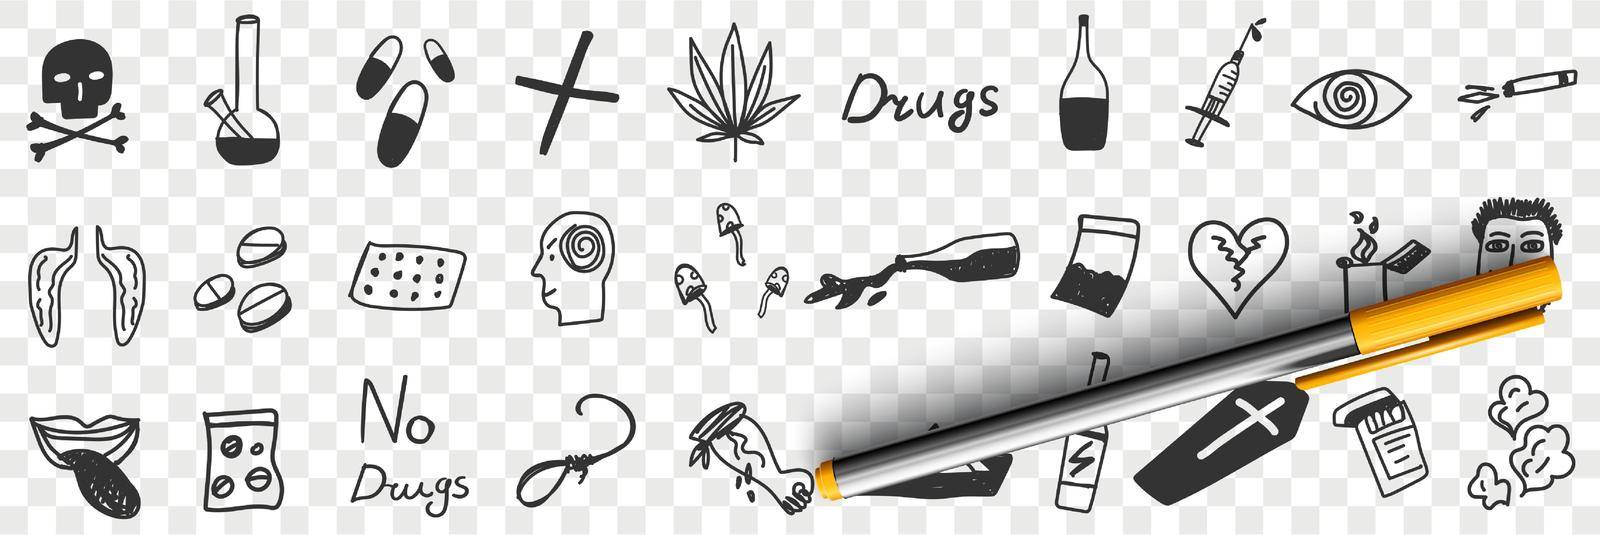 Danger of drugs doodle set by Vasilyeva